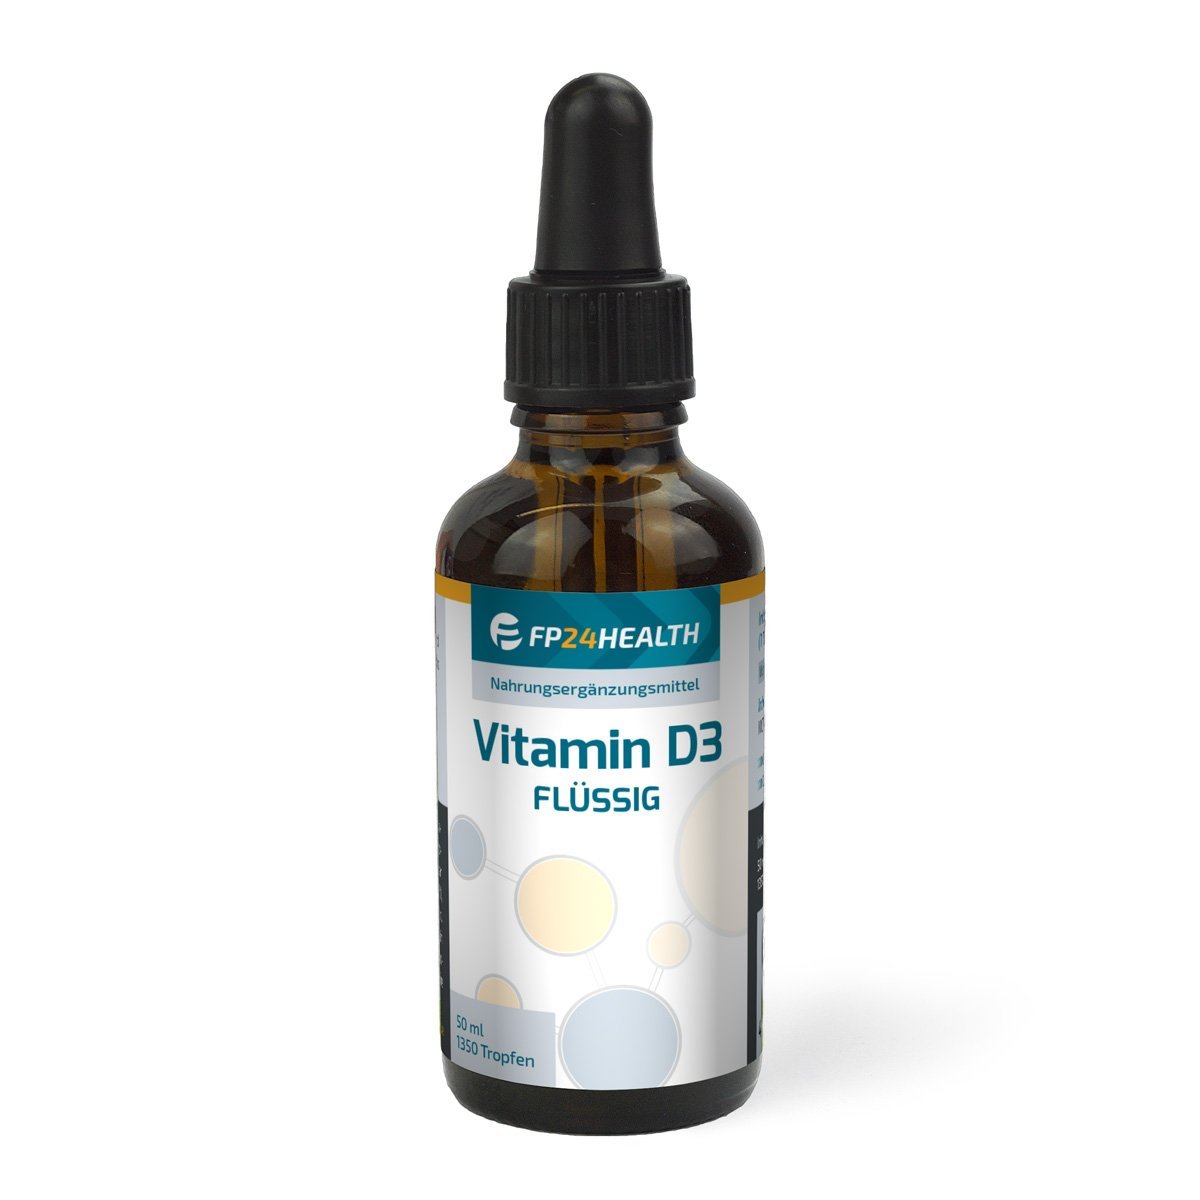 Vitamin D3 flüssig